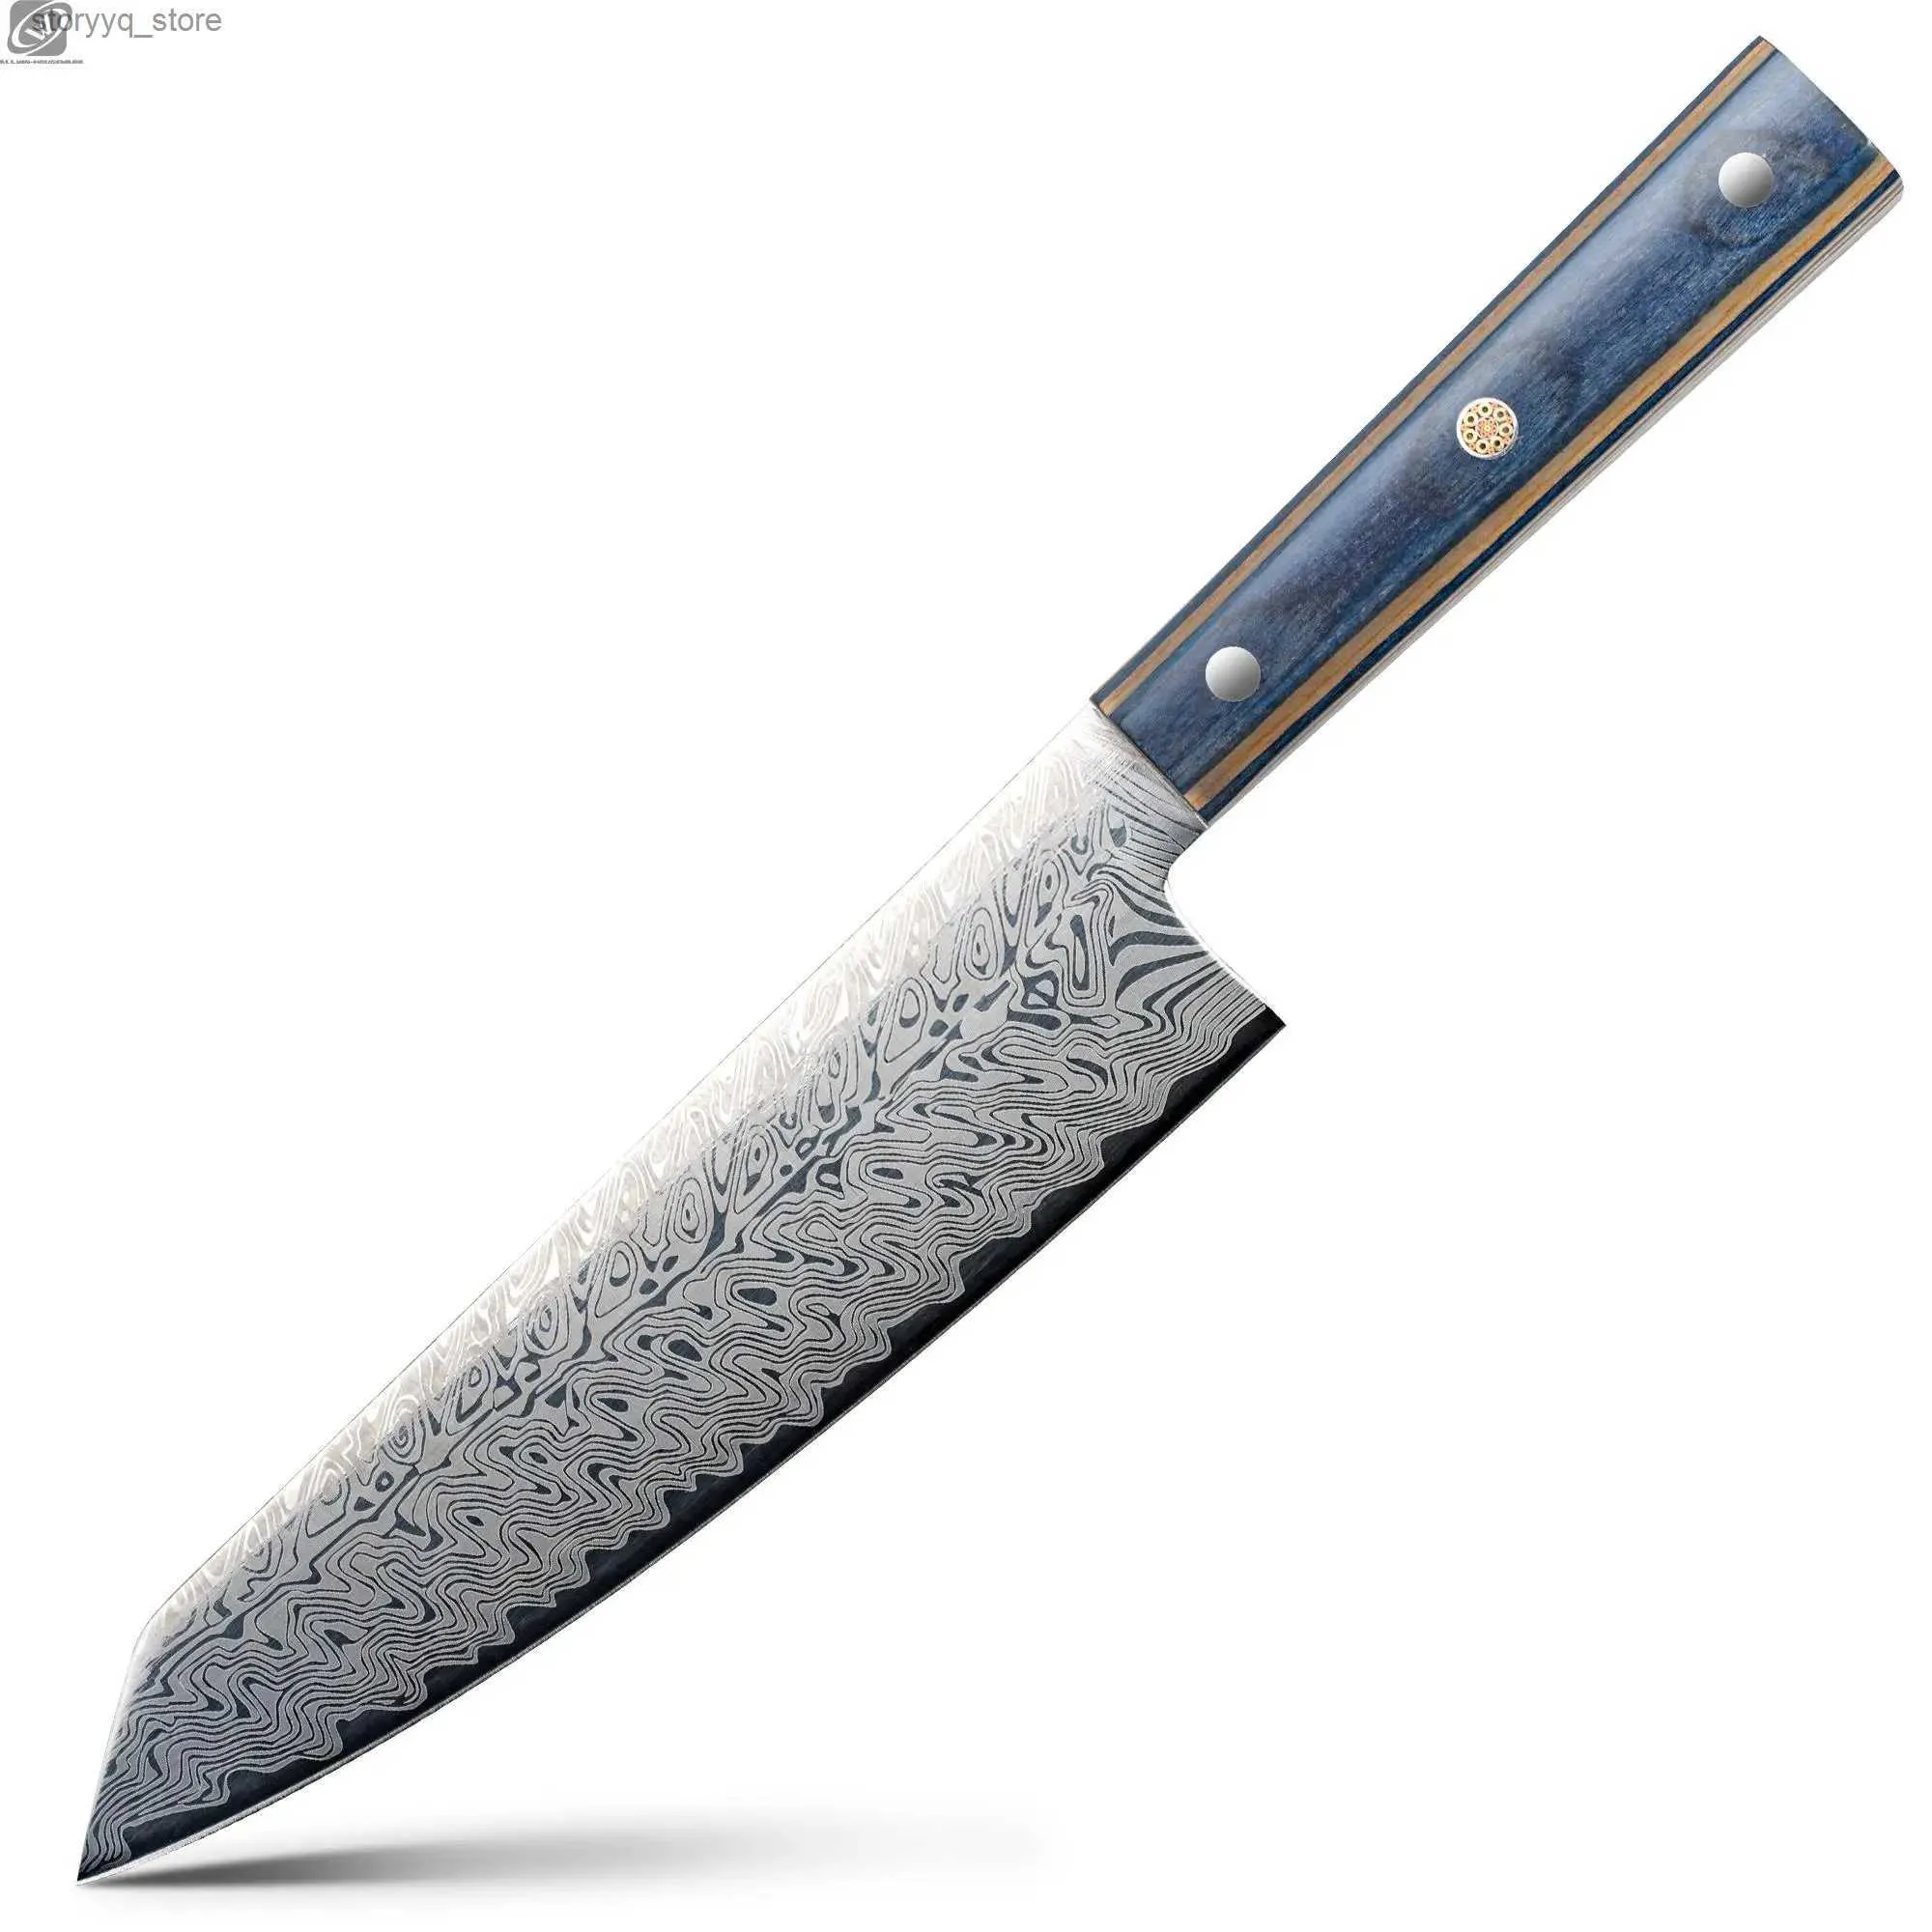 Mutfak Bıçakları Allwin Santoku Bıçak Lazer Şam Desen Mutfak Bıçağı Ergonomik Pakka Saplı Sebze Me Bıçak Pişirme Aracı Q240226